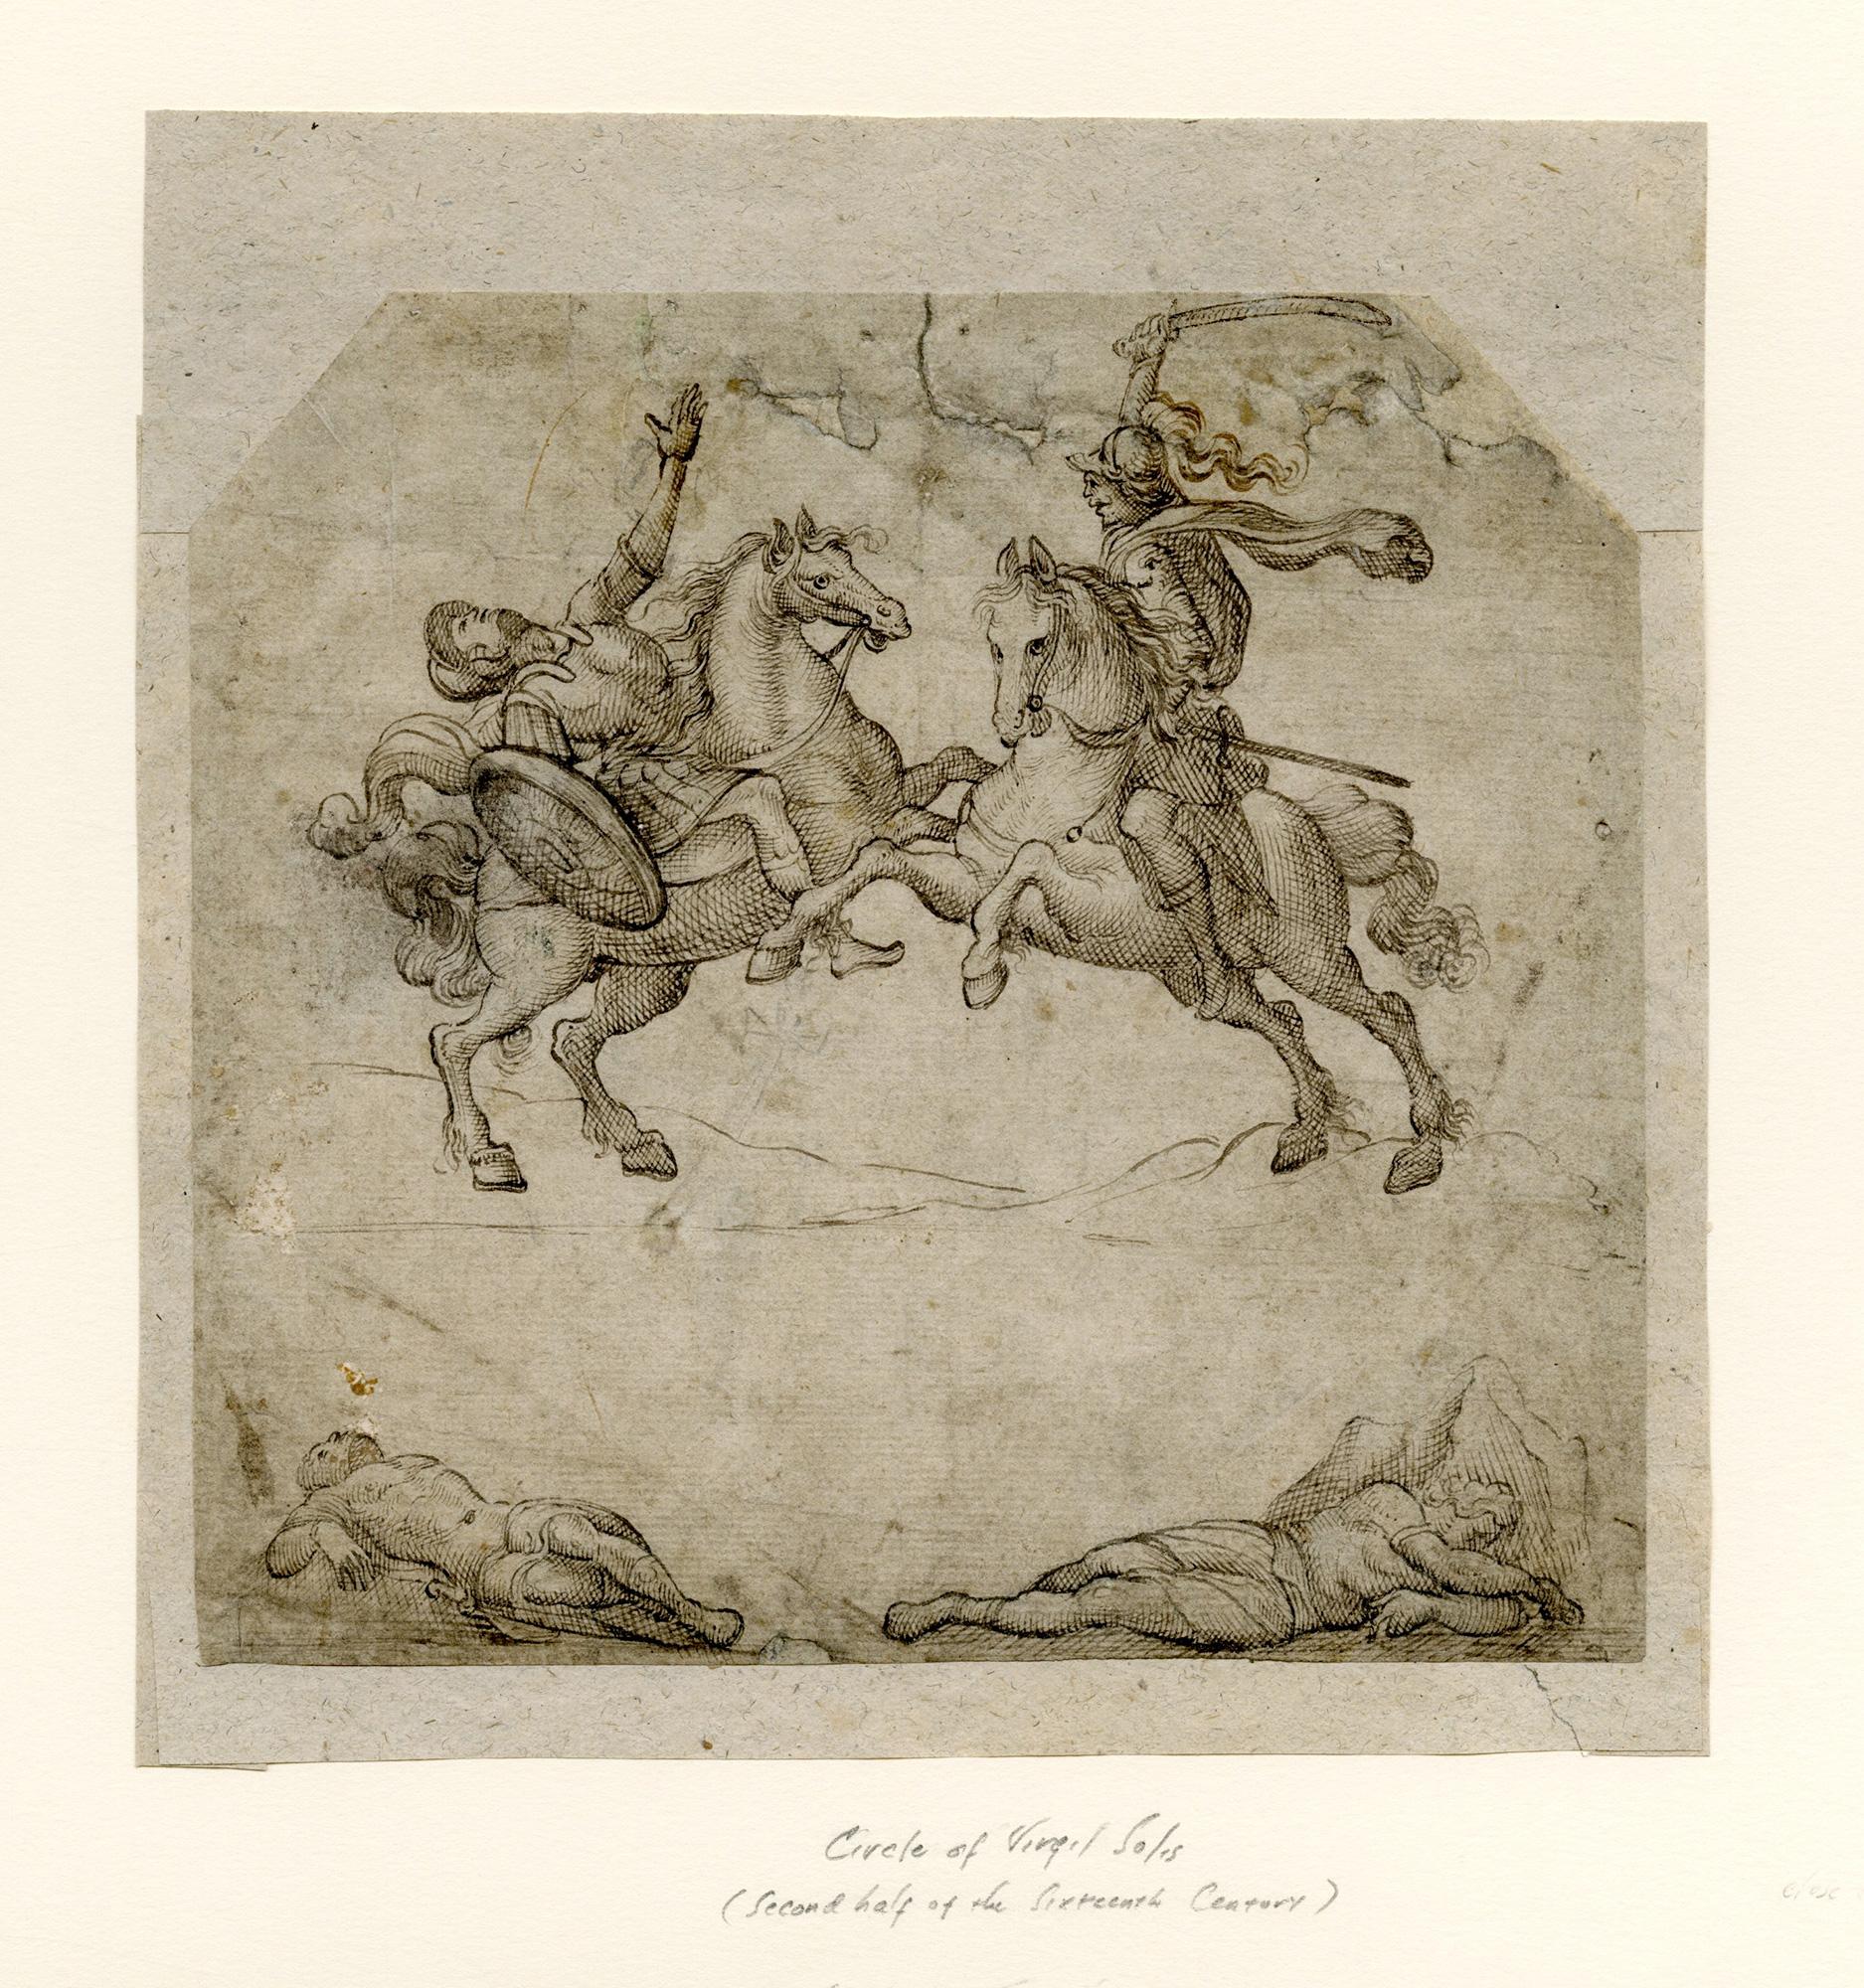 Mythologische Schlachtszene mit römischen Soldaten zu Pferd. – Art von Virgil Solis